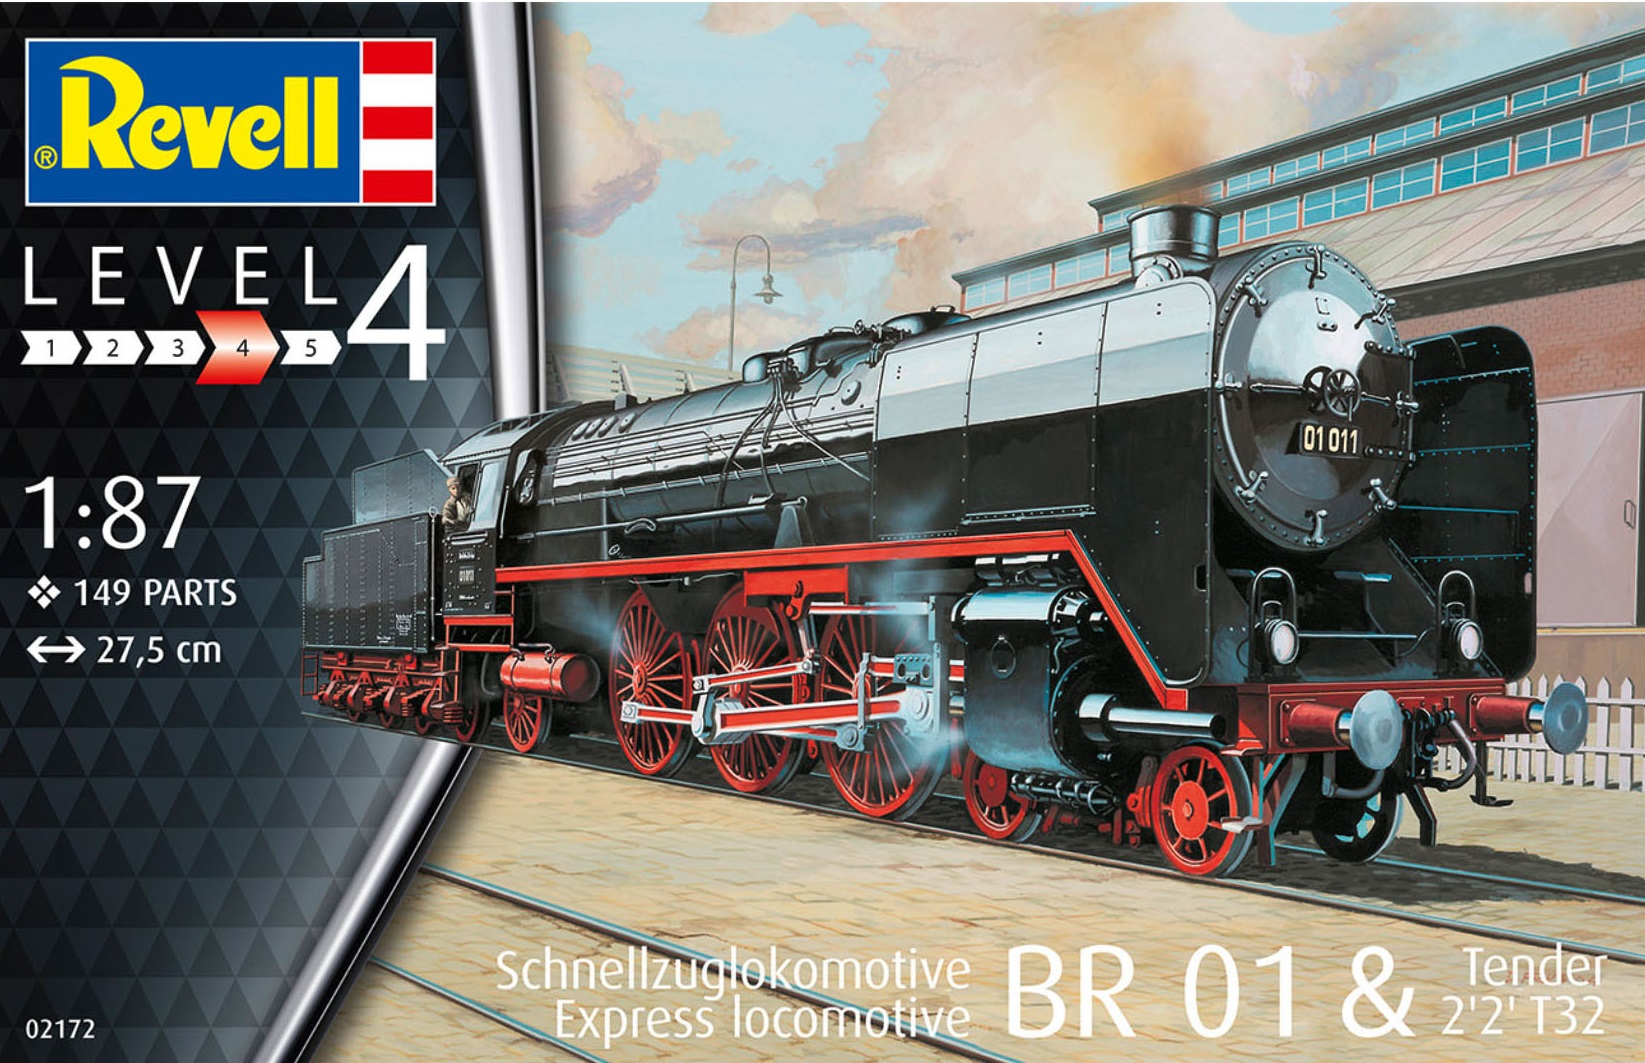 02172  техника и вооружение  Schnellzuglokomotive BR 01 & Tender 2'2' T32  (1:87)